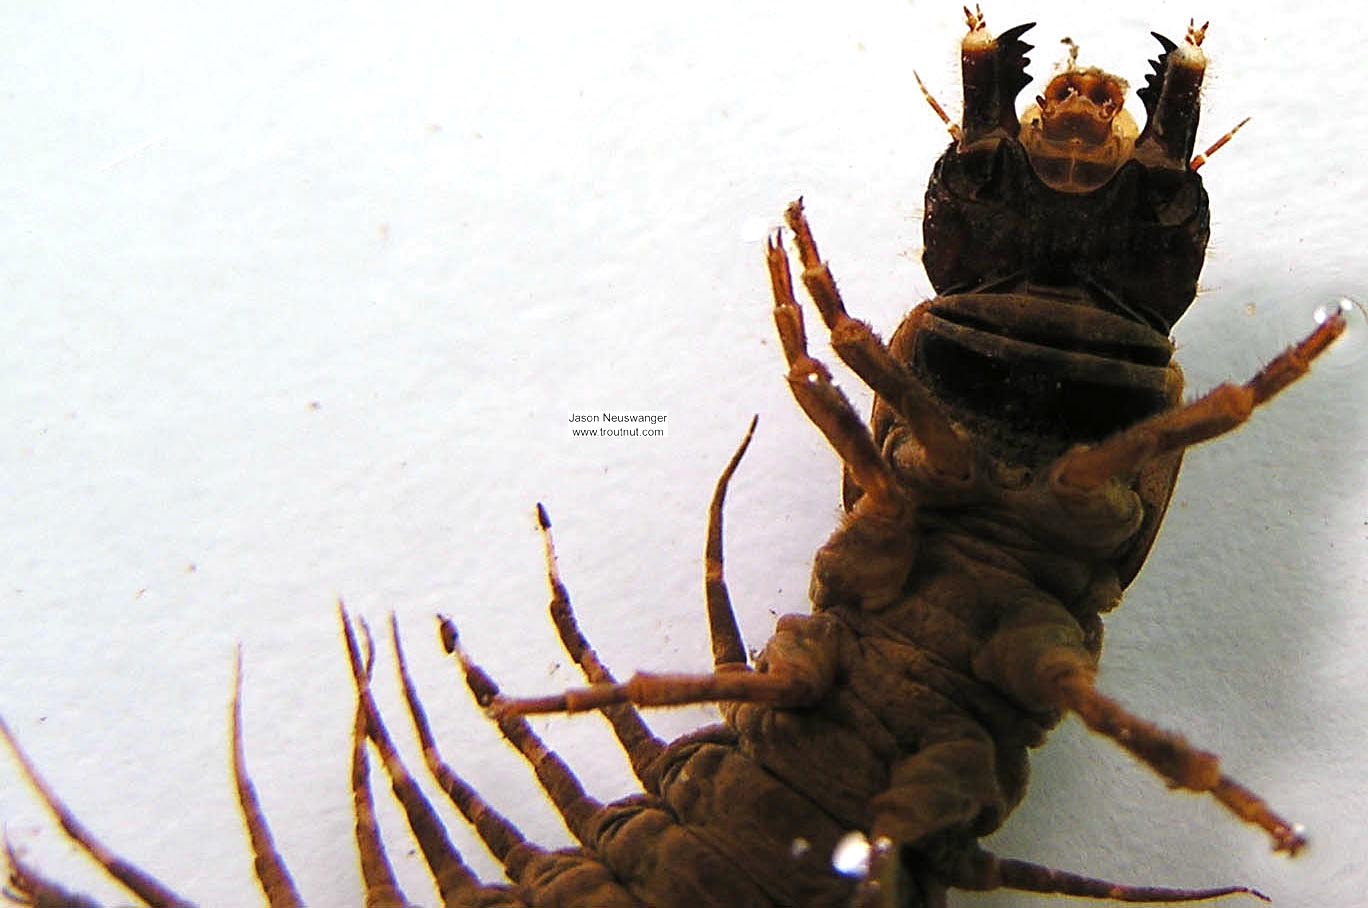 Nigronia serricornis (Fishfly) Hellgrammite Larva from unknown in Wisconsin